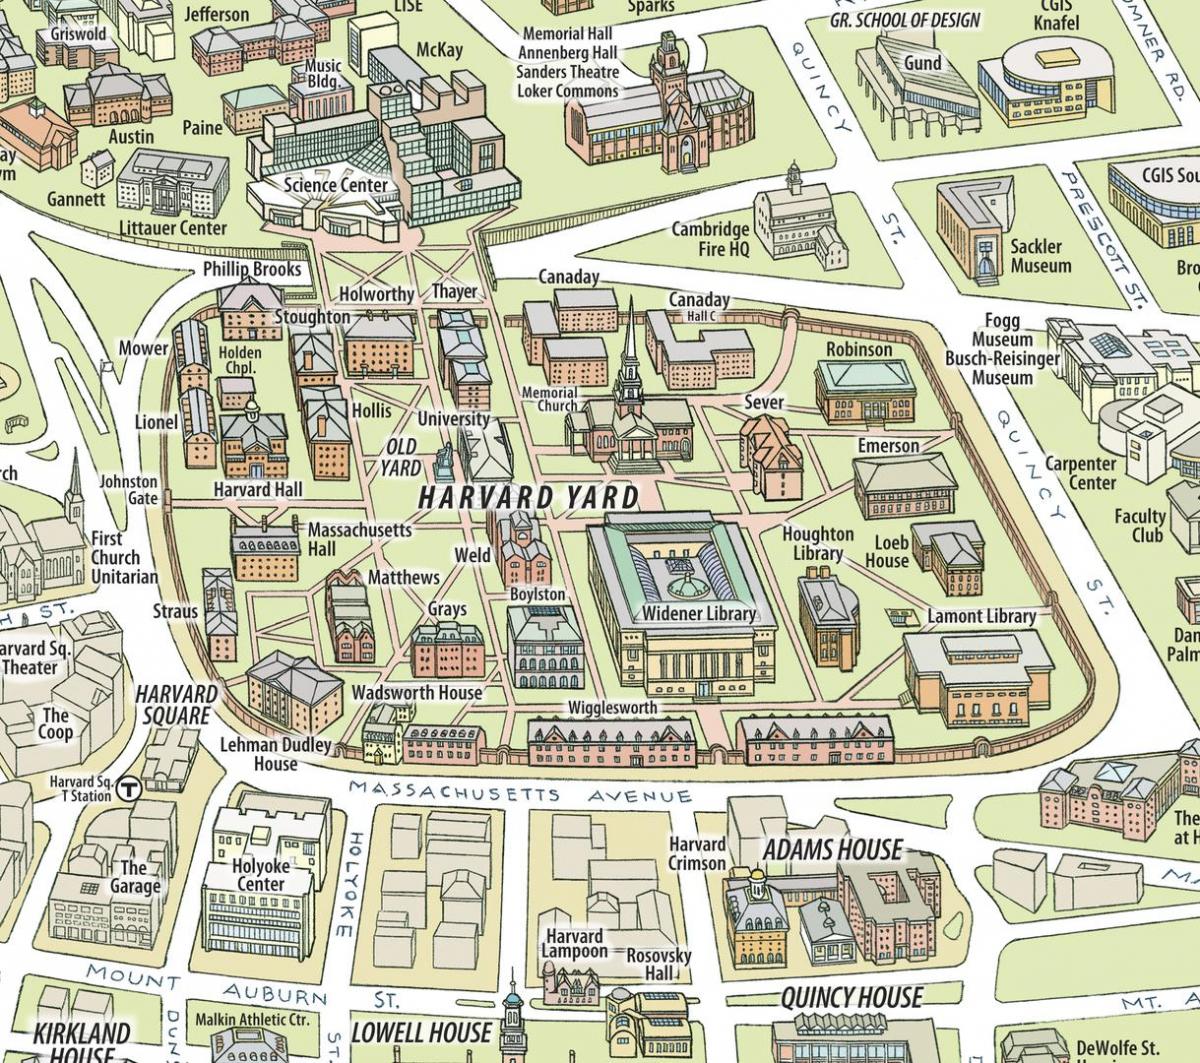 térkép, a Harvard egyetem